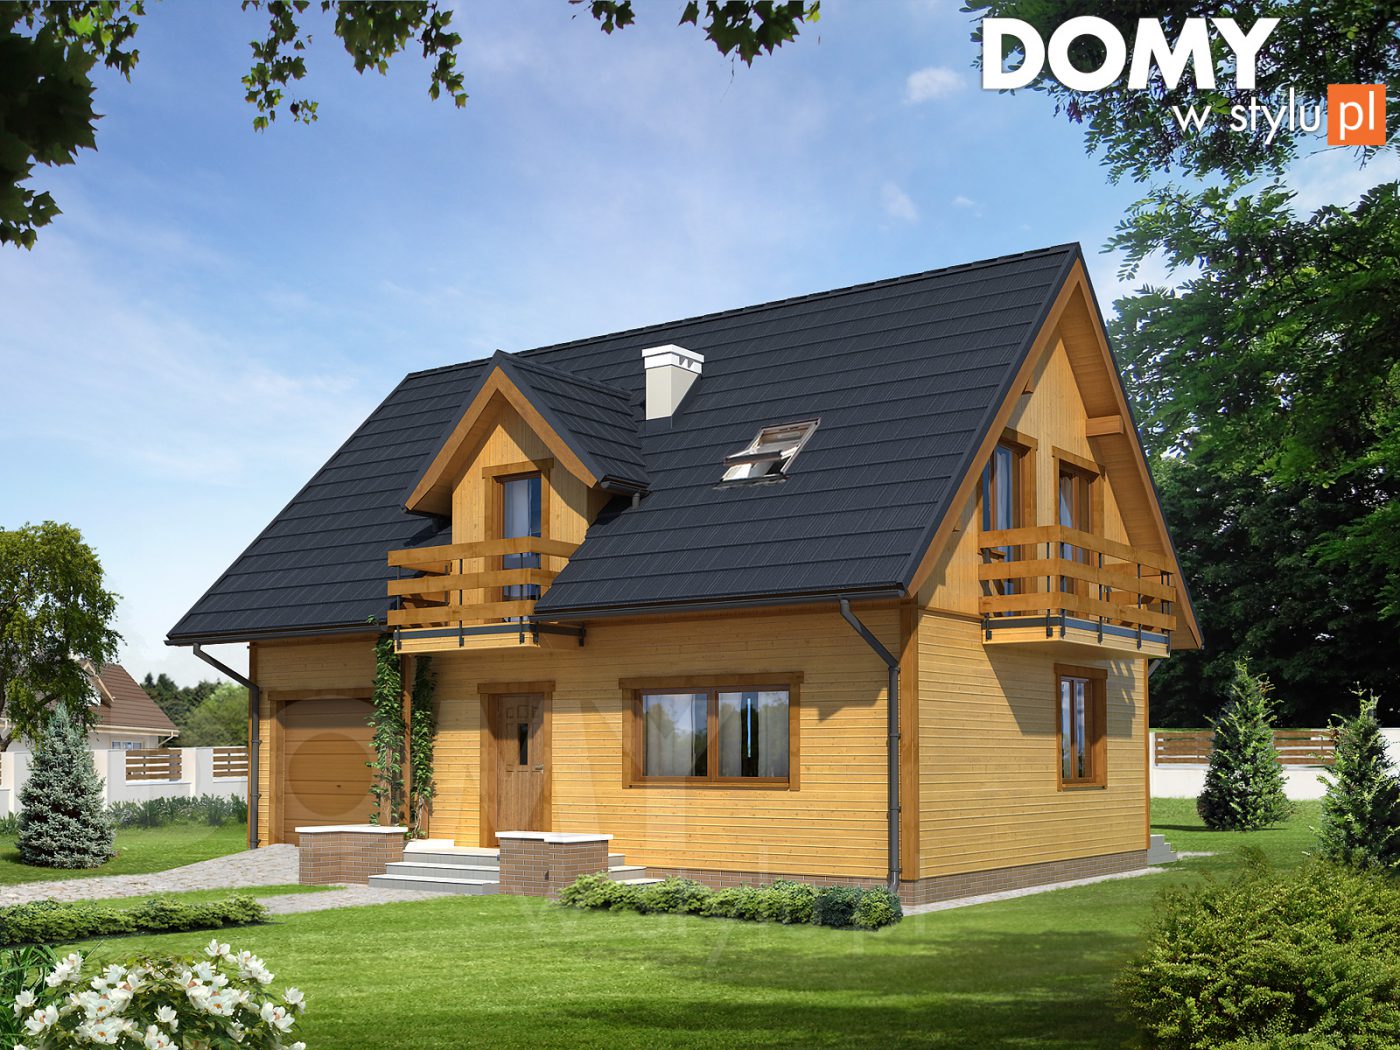 Projekty domów szkieletowych. Czy drewniany dom energooszczędny jest możliwy?